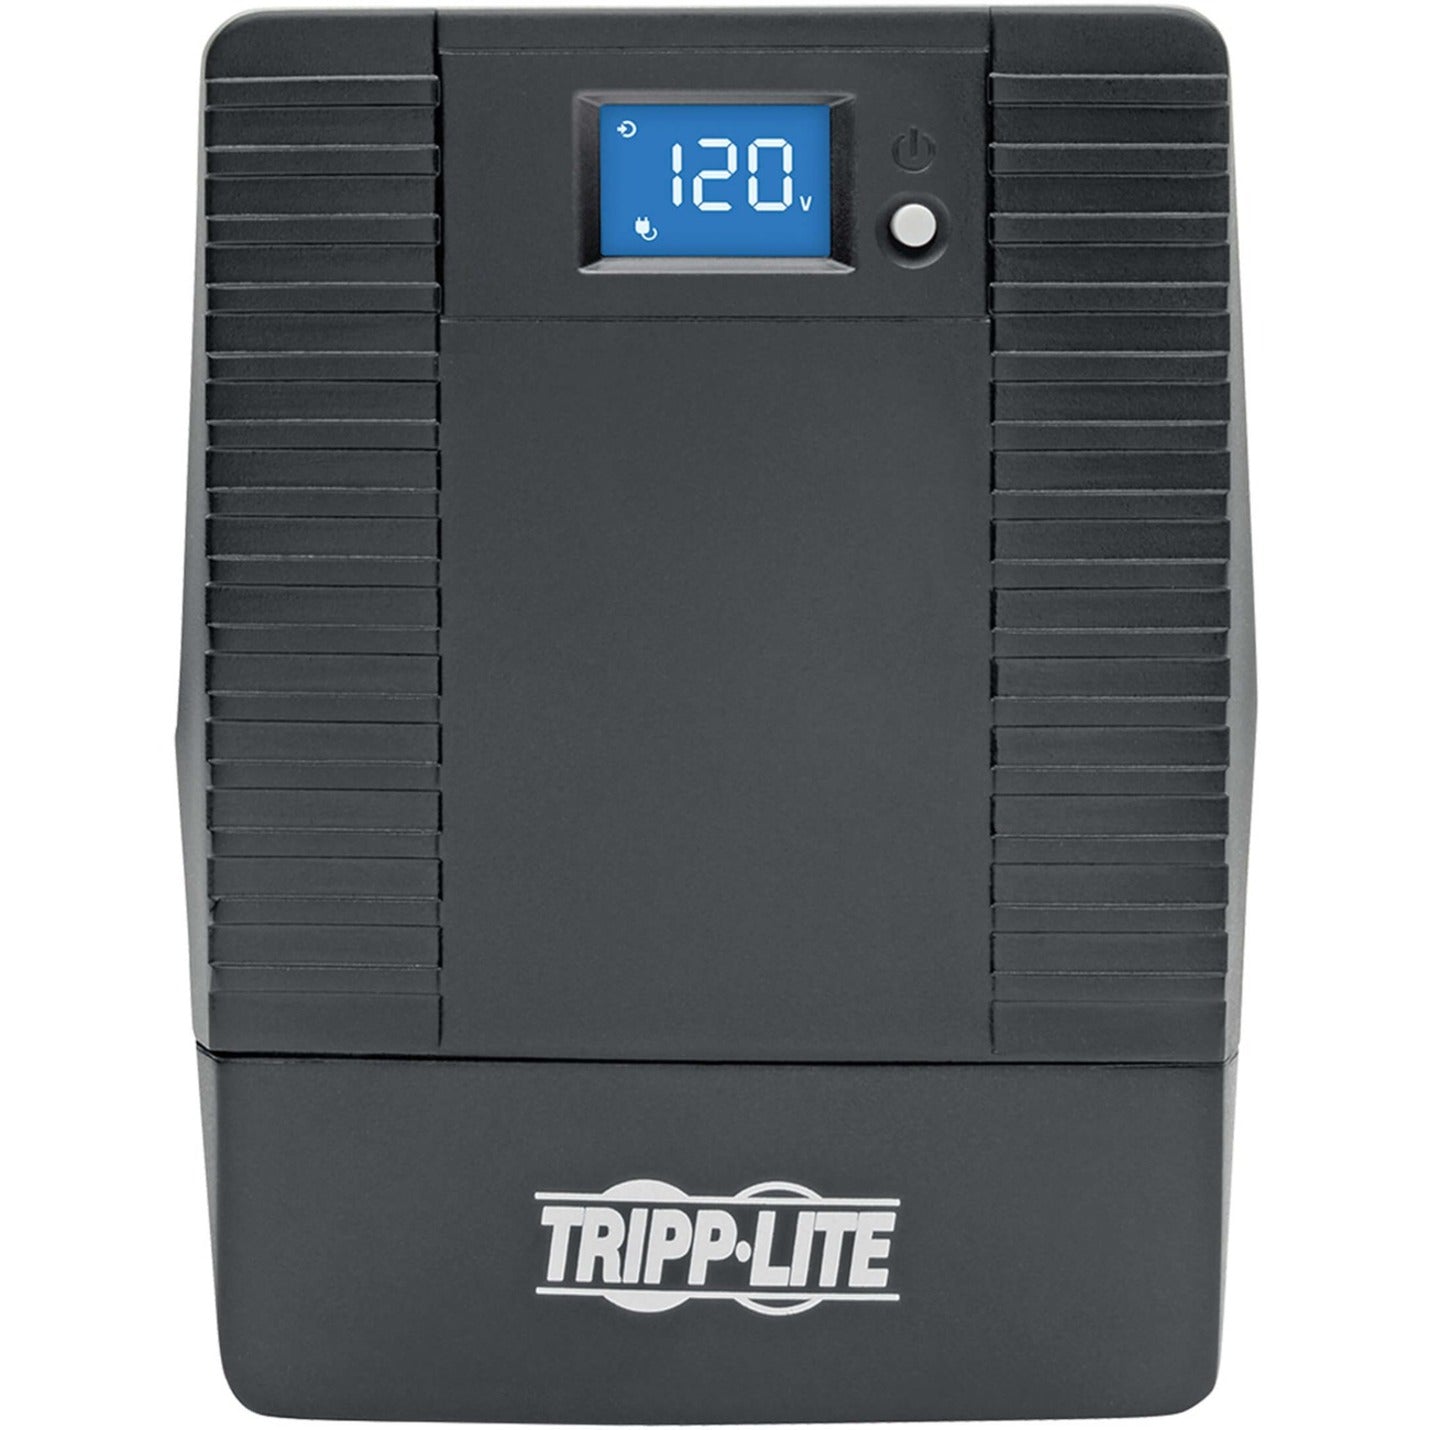 Tripp Lite OMNI700LCDT 700VA Tower UPS, 3 Year Warranty, LCD Display, USB Port